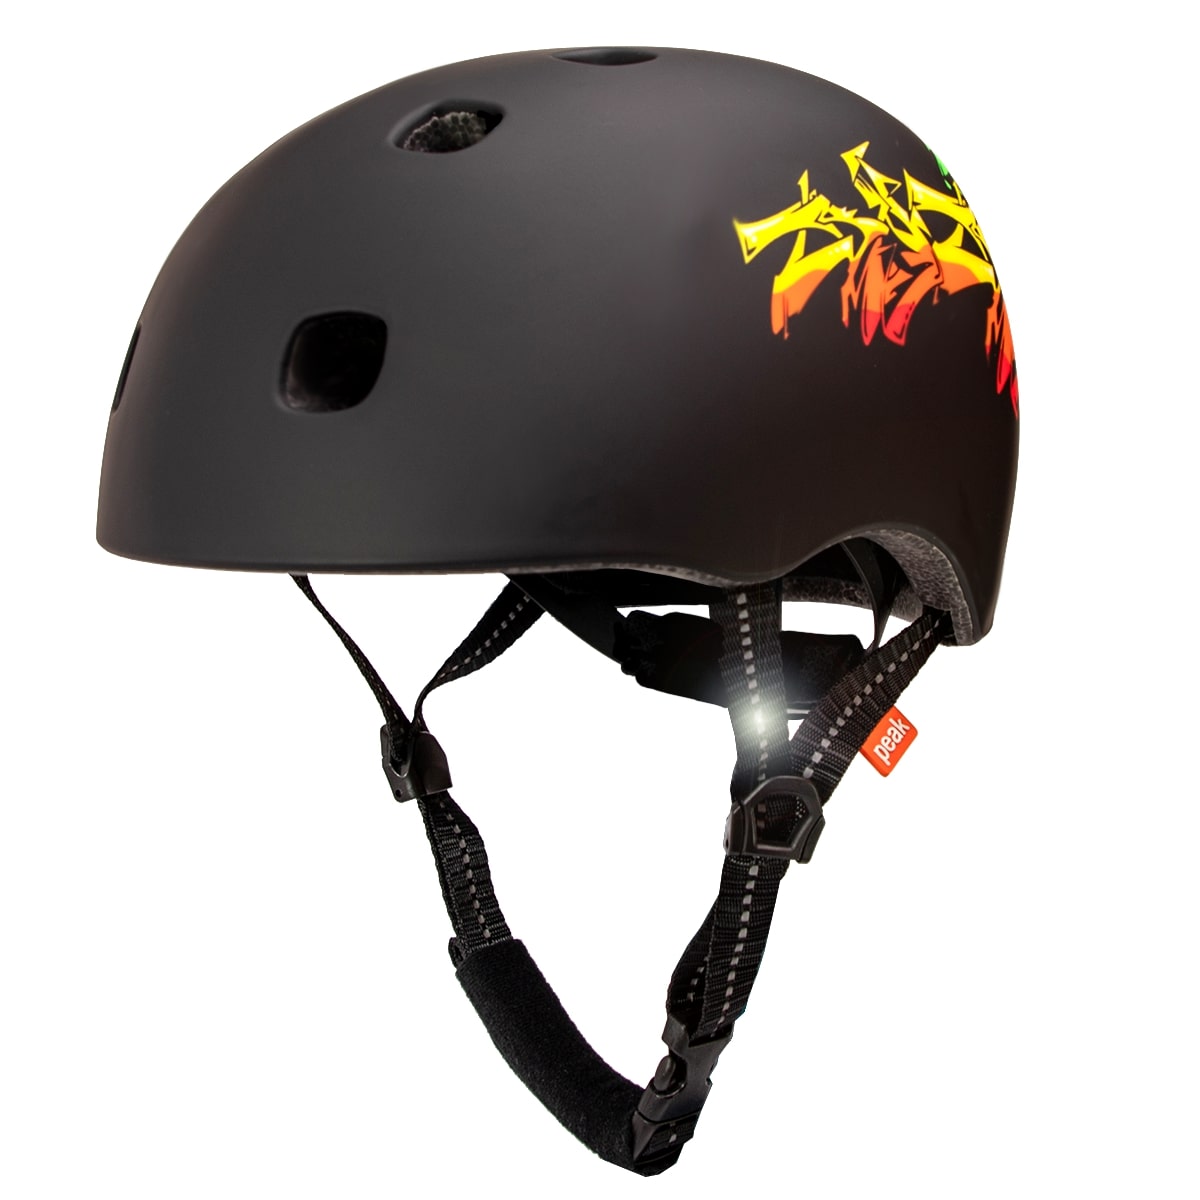 Billede af Crazy Safety sort in-mould Skater cykelhjelm til teens & voksne. Testet, certificeret og godkendt EN1078